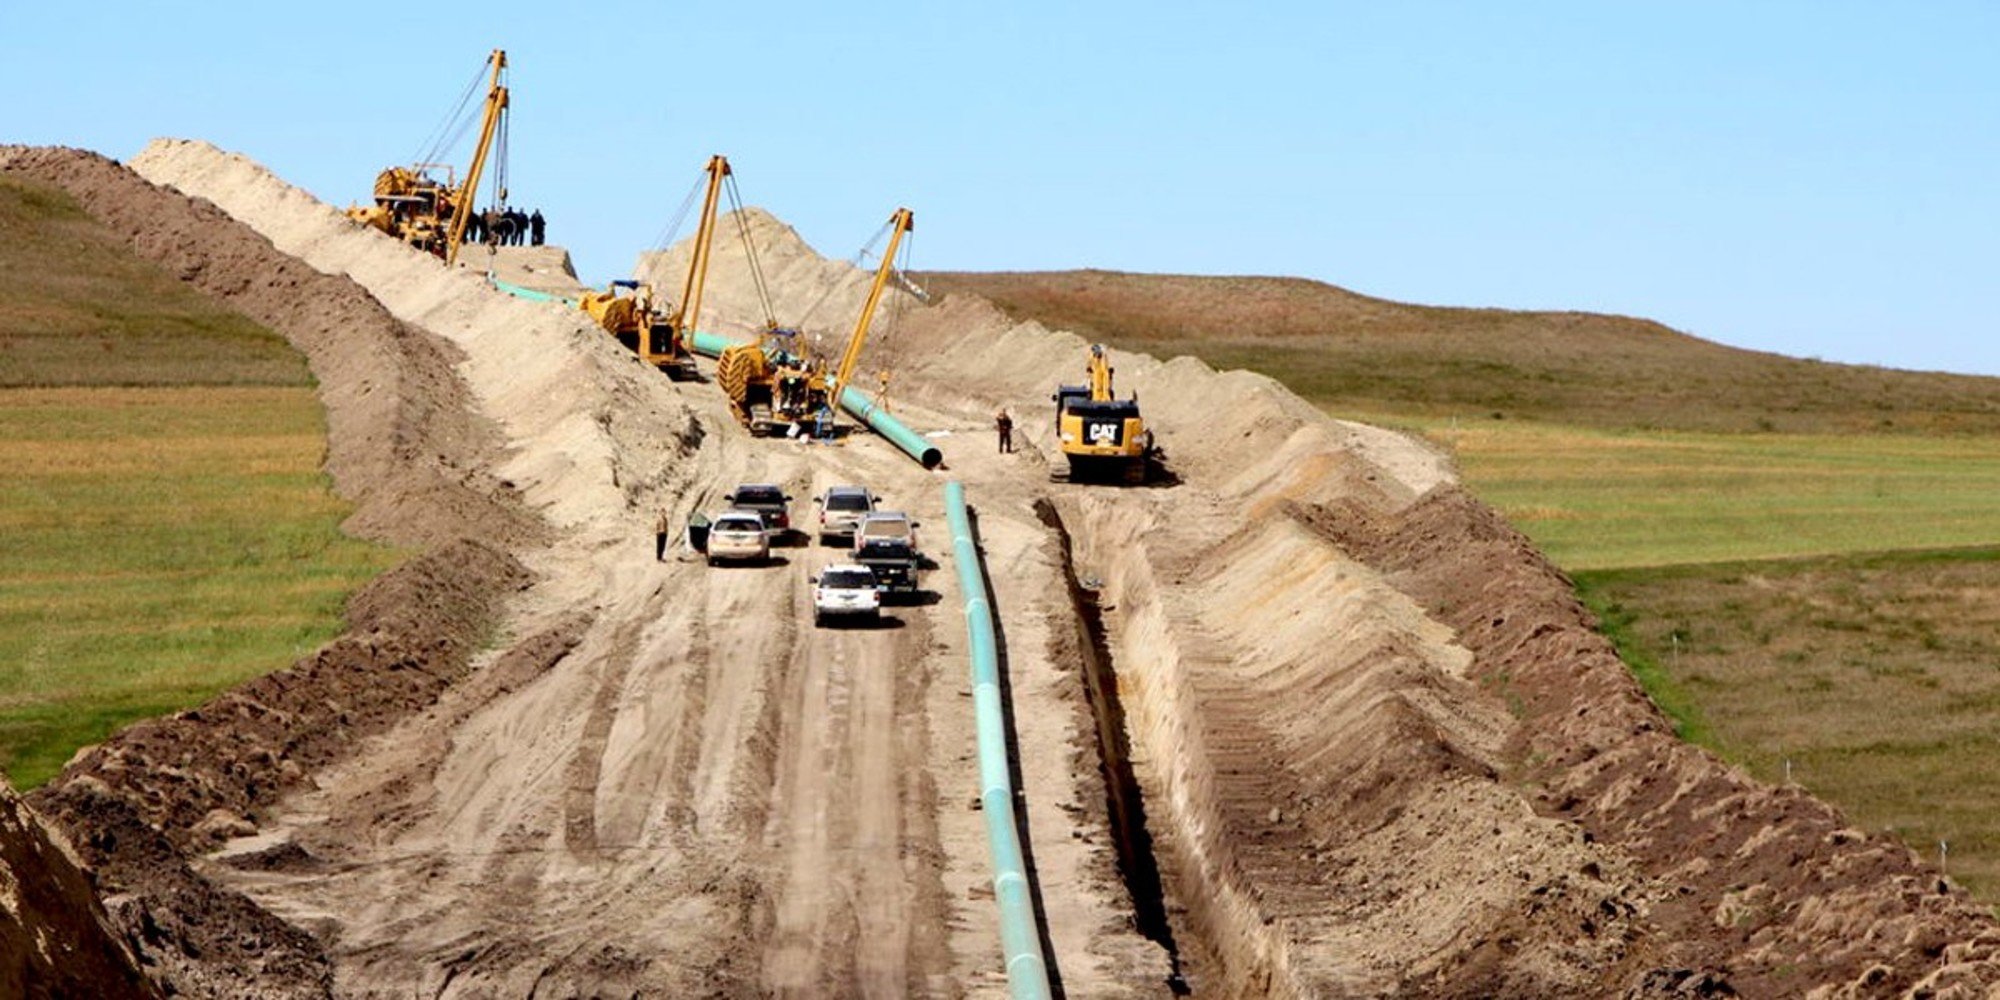 Dakota Access Pipeline project